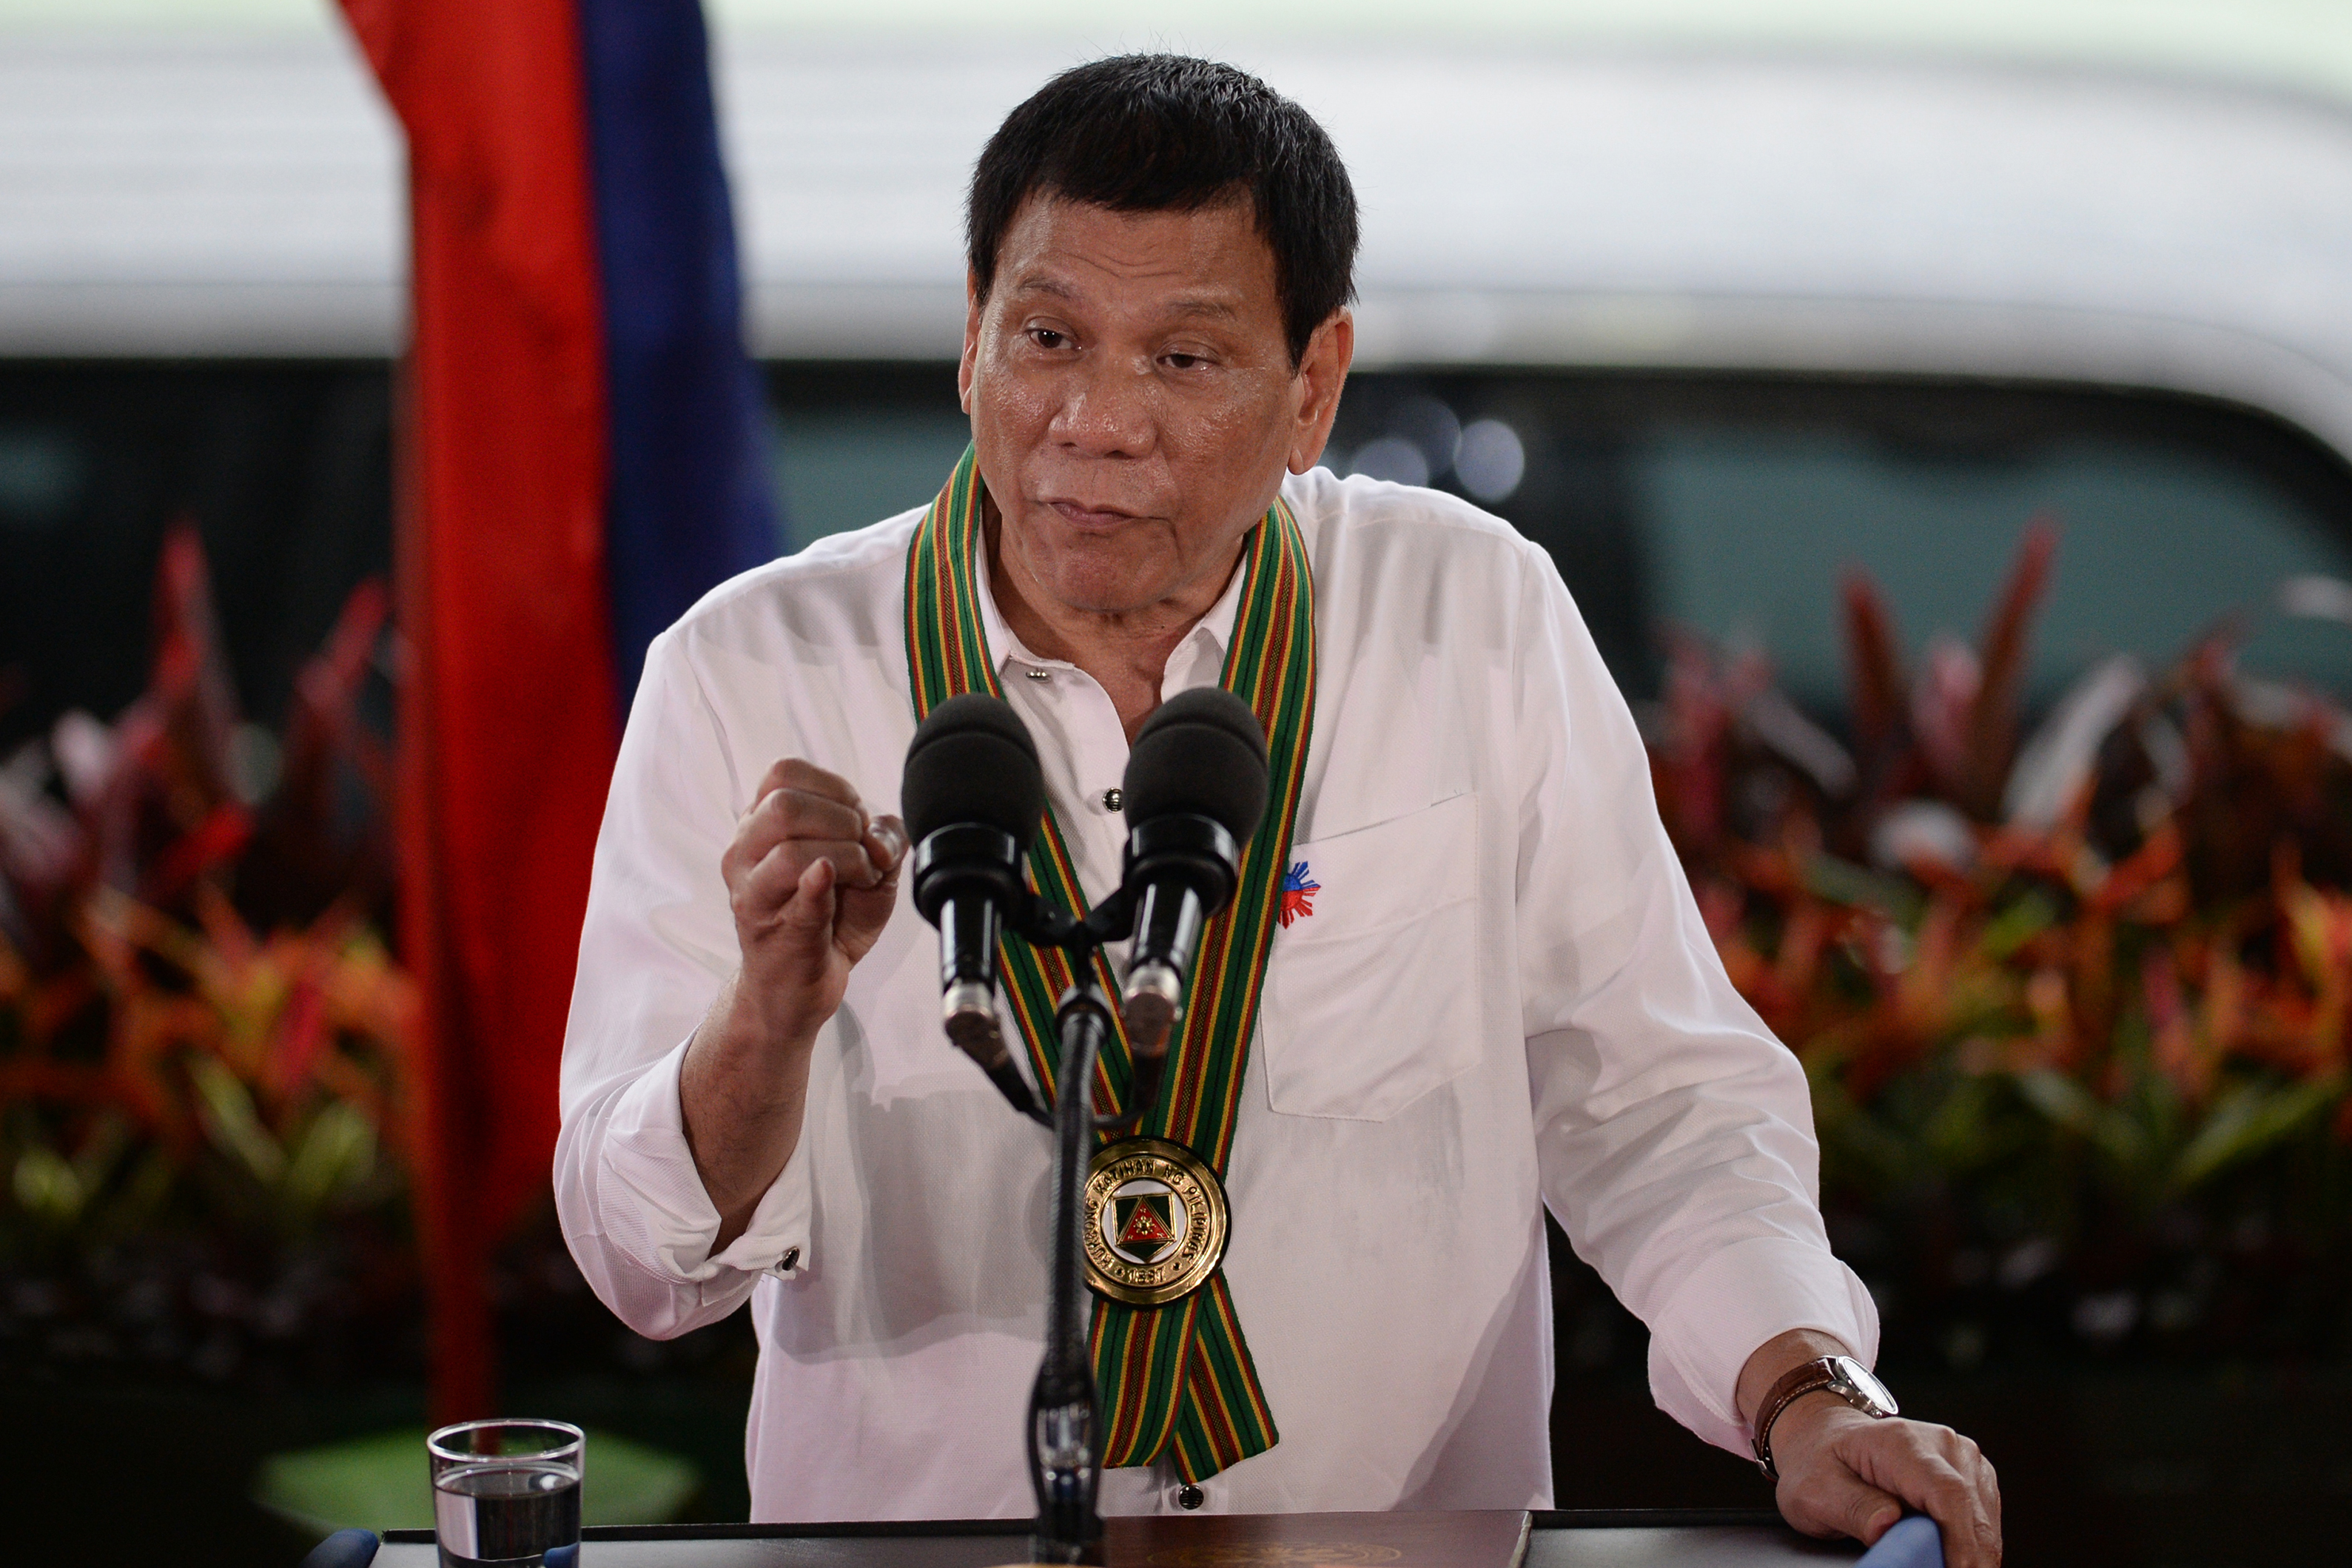 Helikopterből dobálná ki a korrupt politikusokat a fülöp-szigeteki elnök